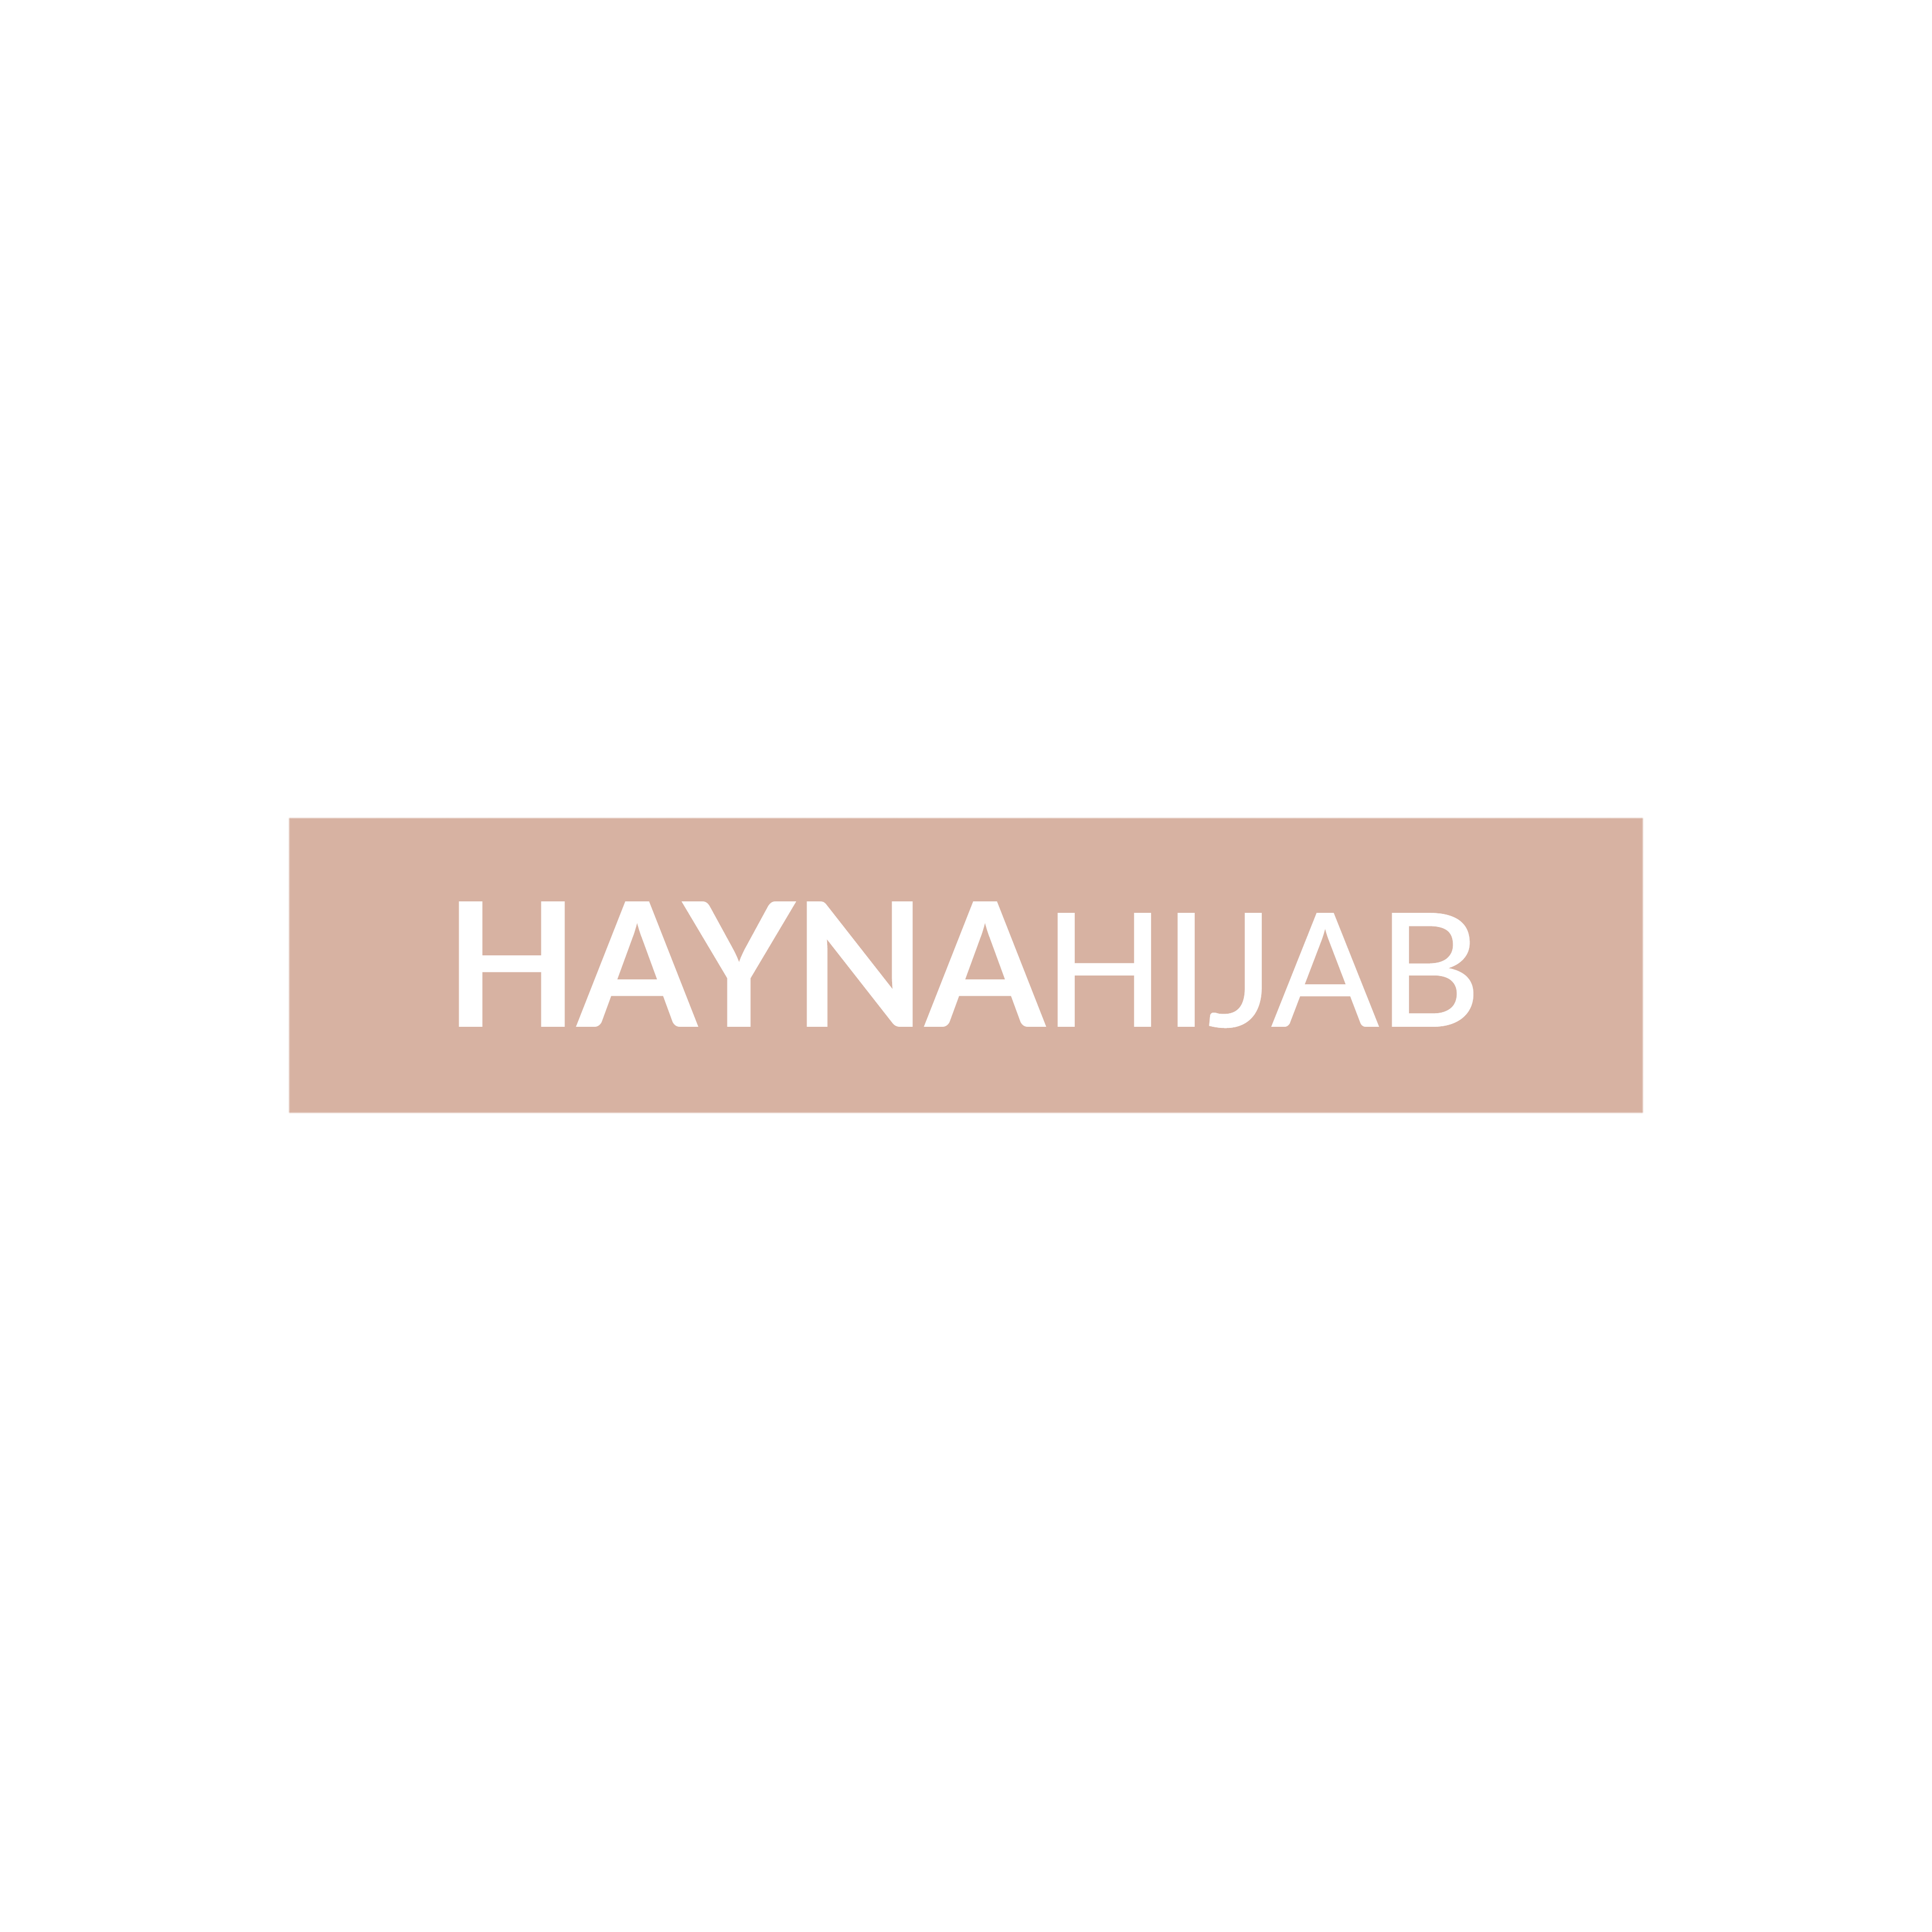 Haynahijab